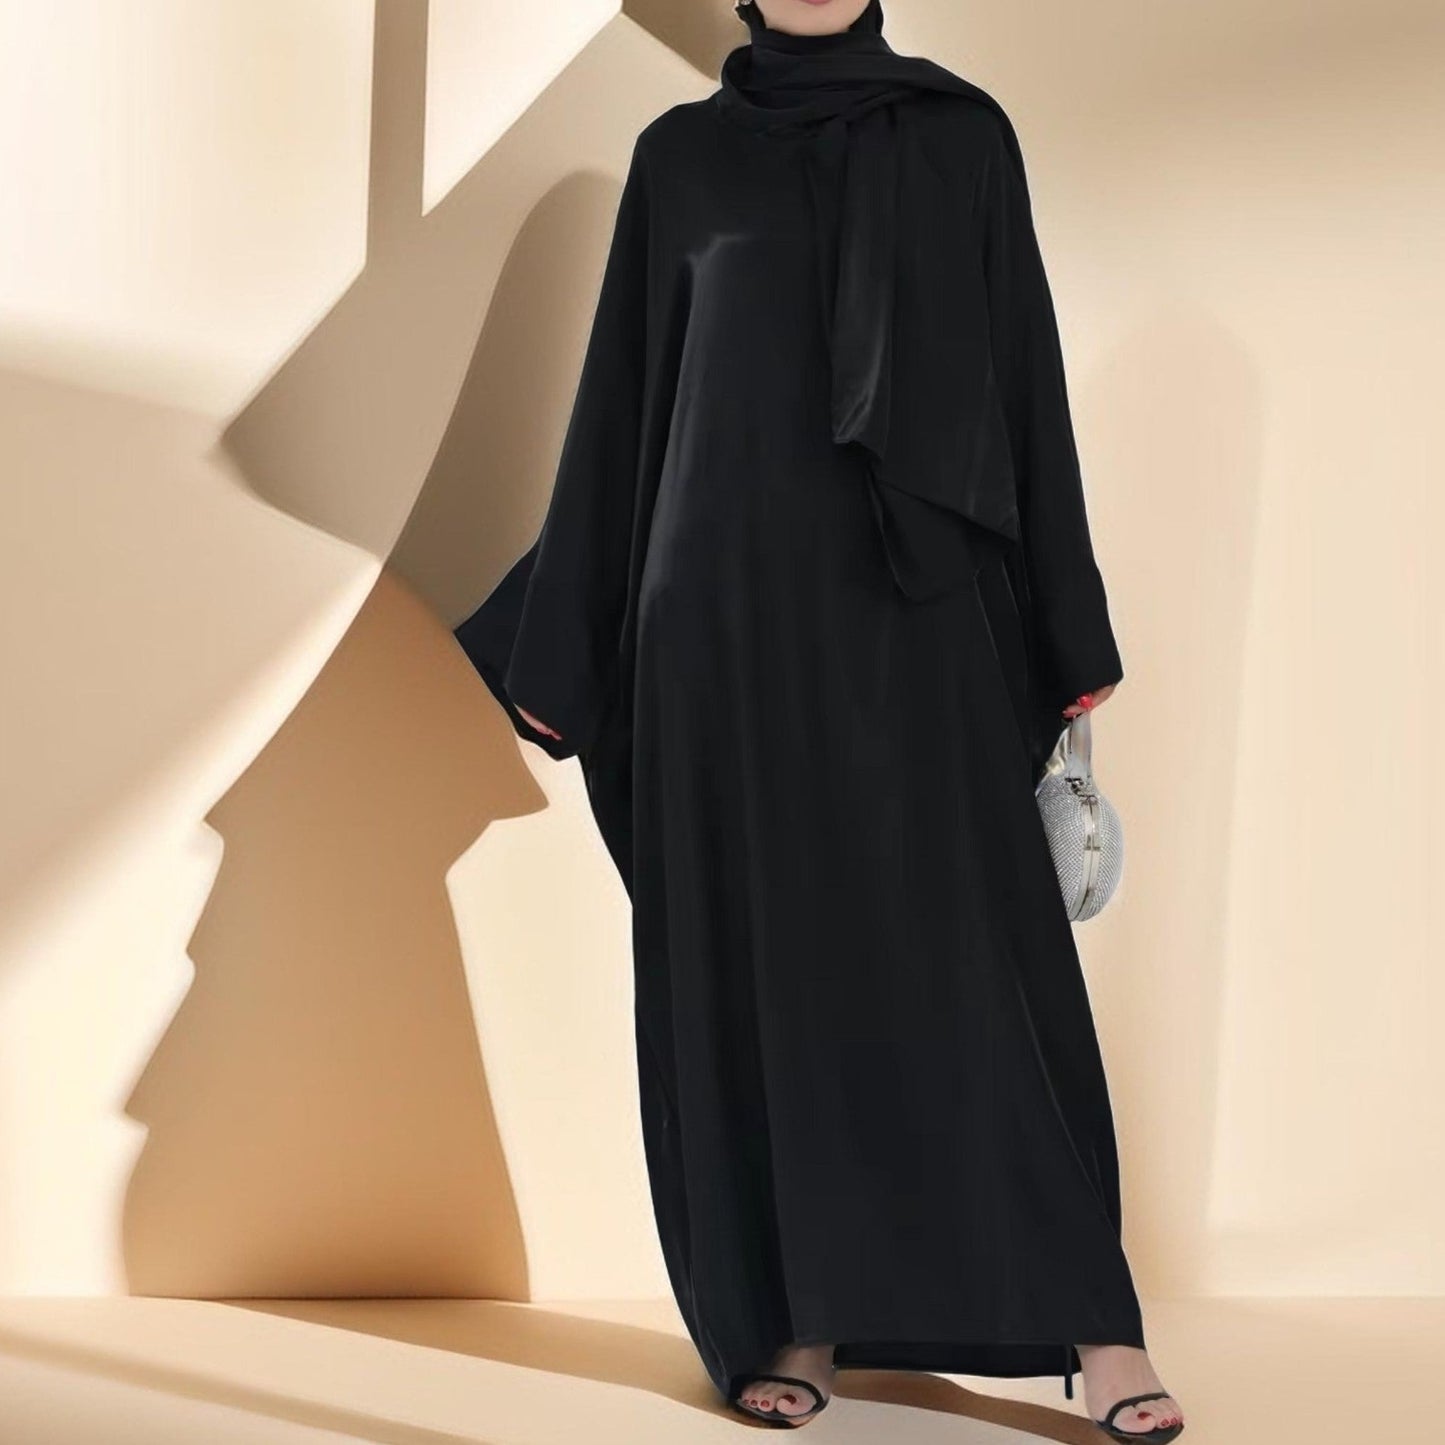 Luminous Luxury Abaya le hijab ceangalt